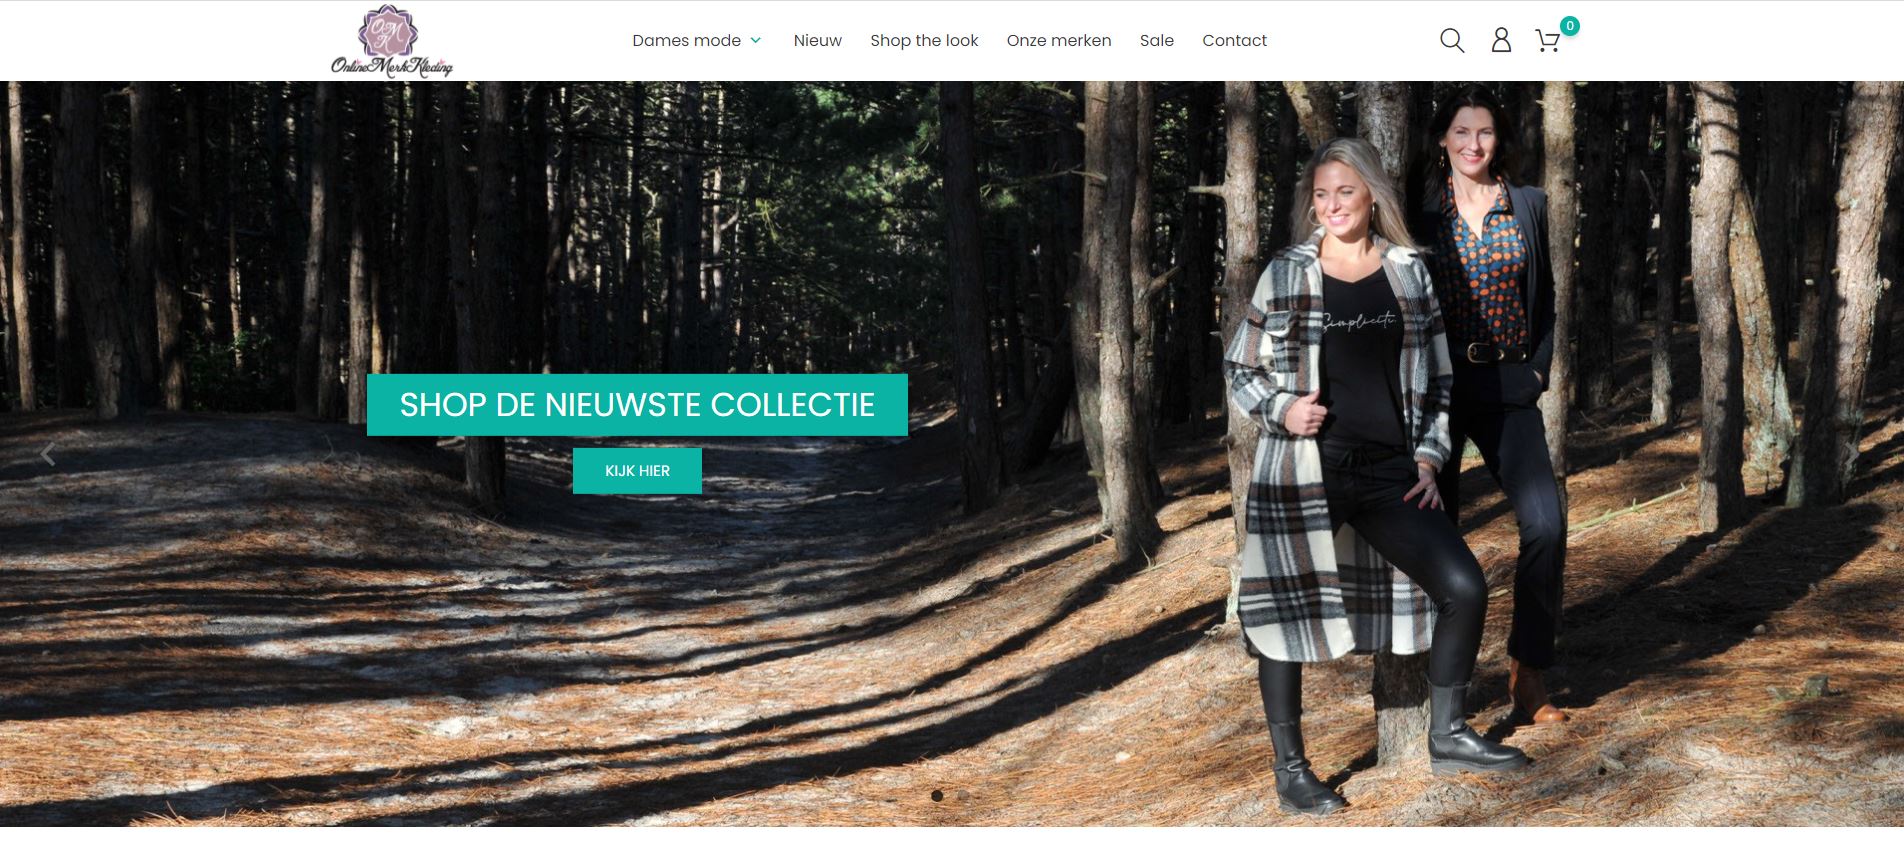 Screenshot onlinemerkkleding.nl